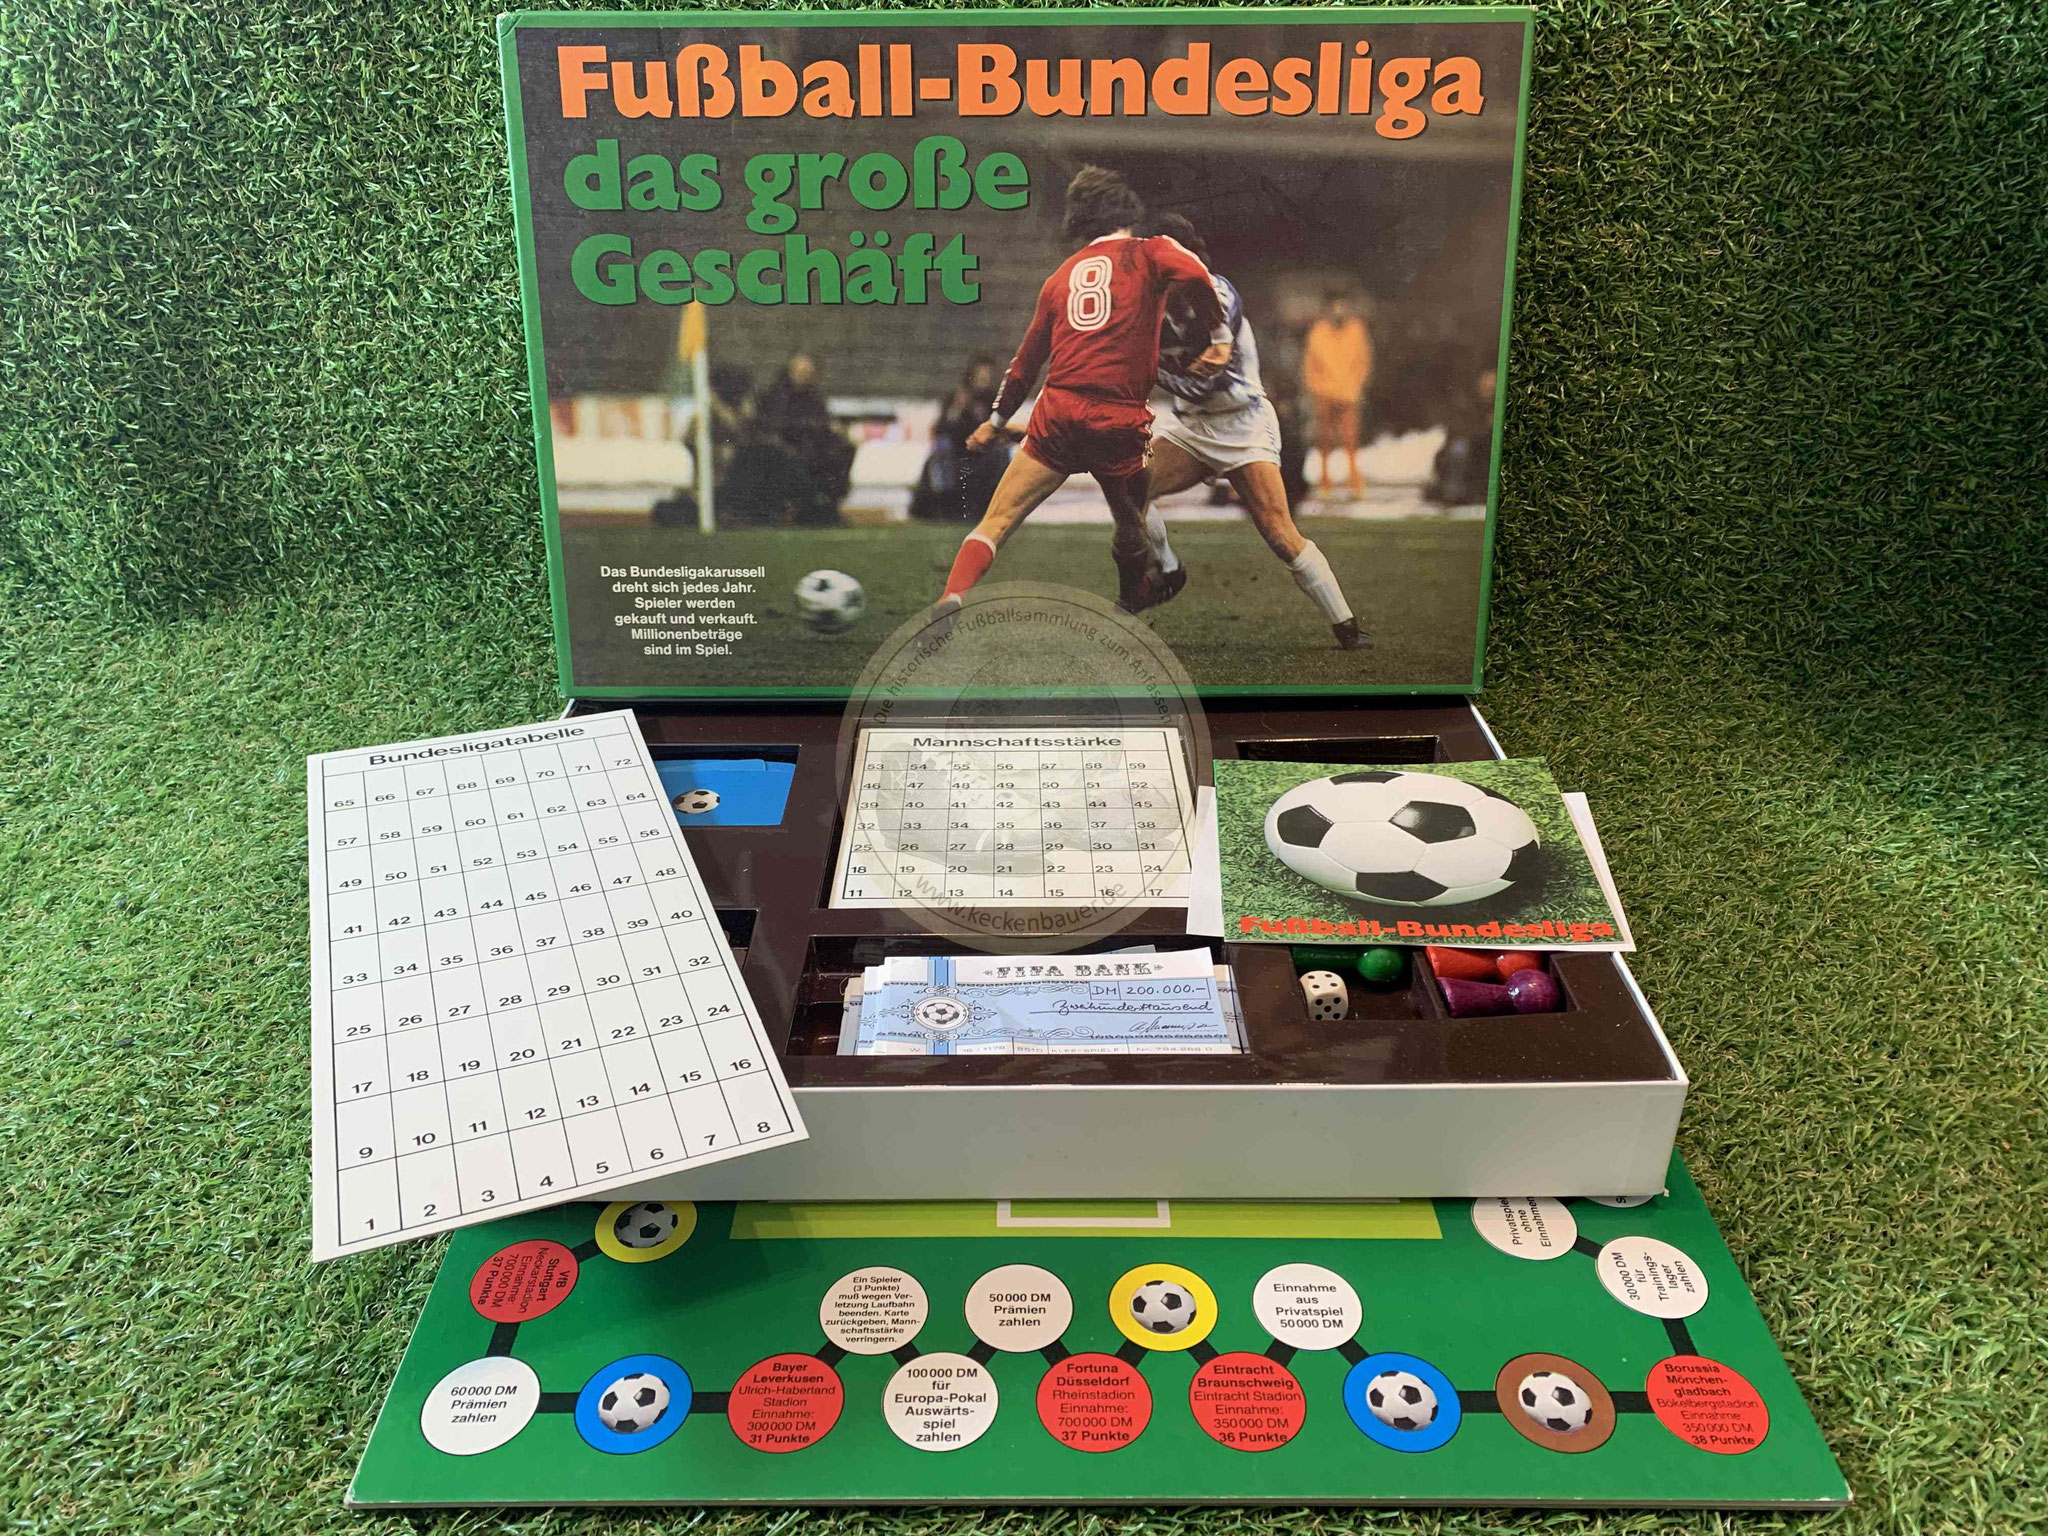 Fußball-Bundesliga das große Geschäft Fußballspiel 1980 von Klee